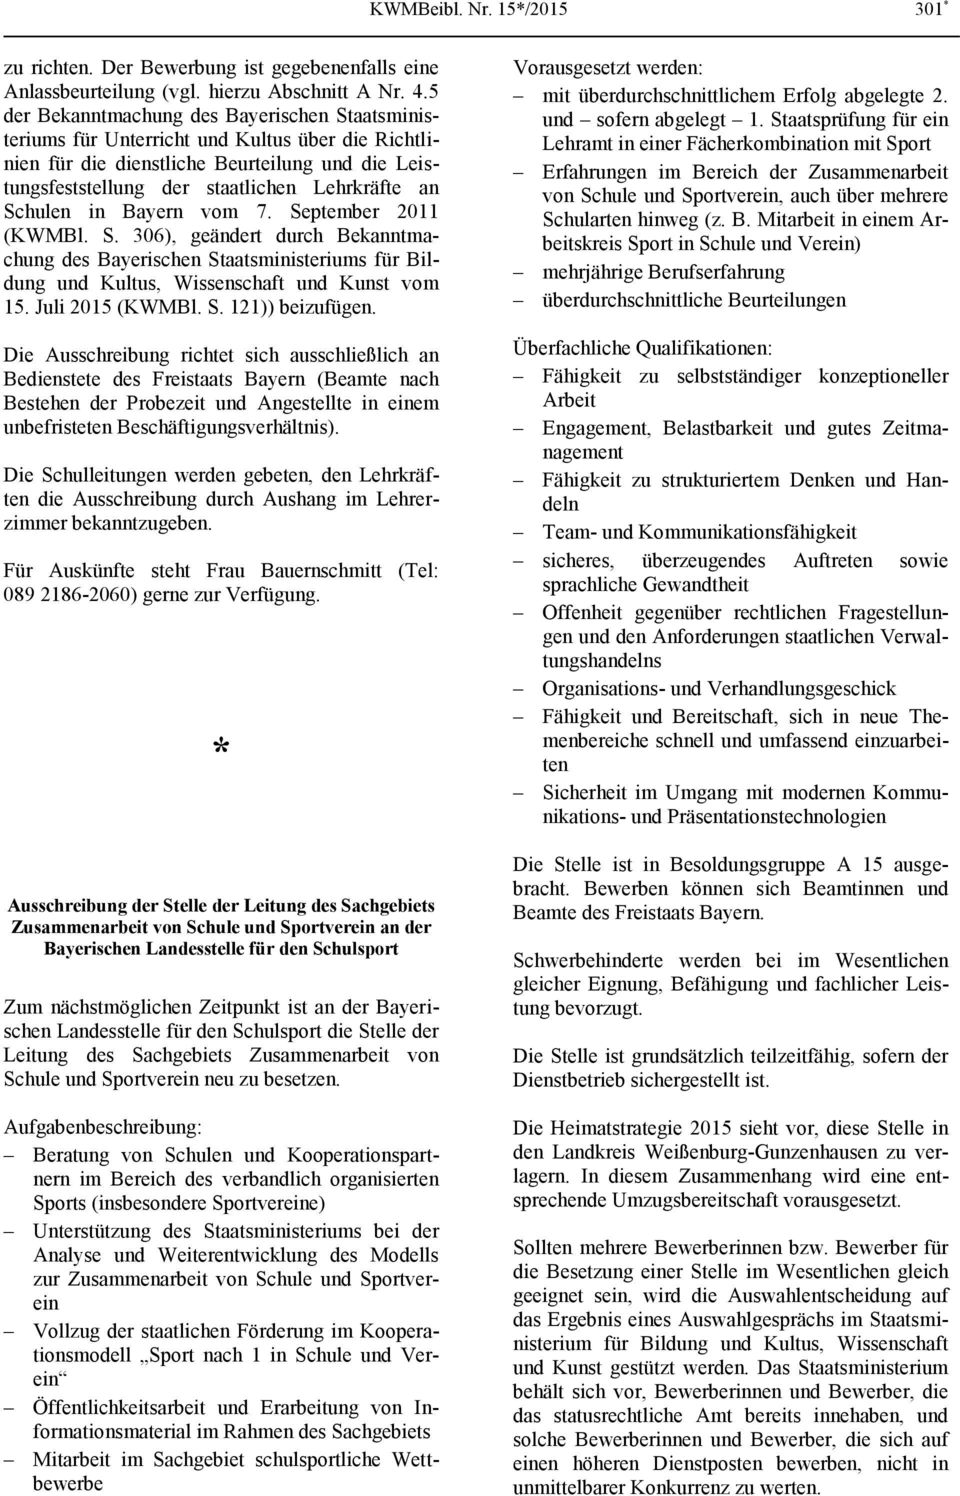 Beiblatt Zum Amtsblatt Des Bayerischen Staatsministeriums Für